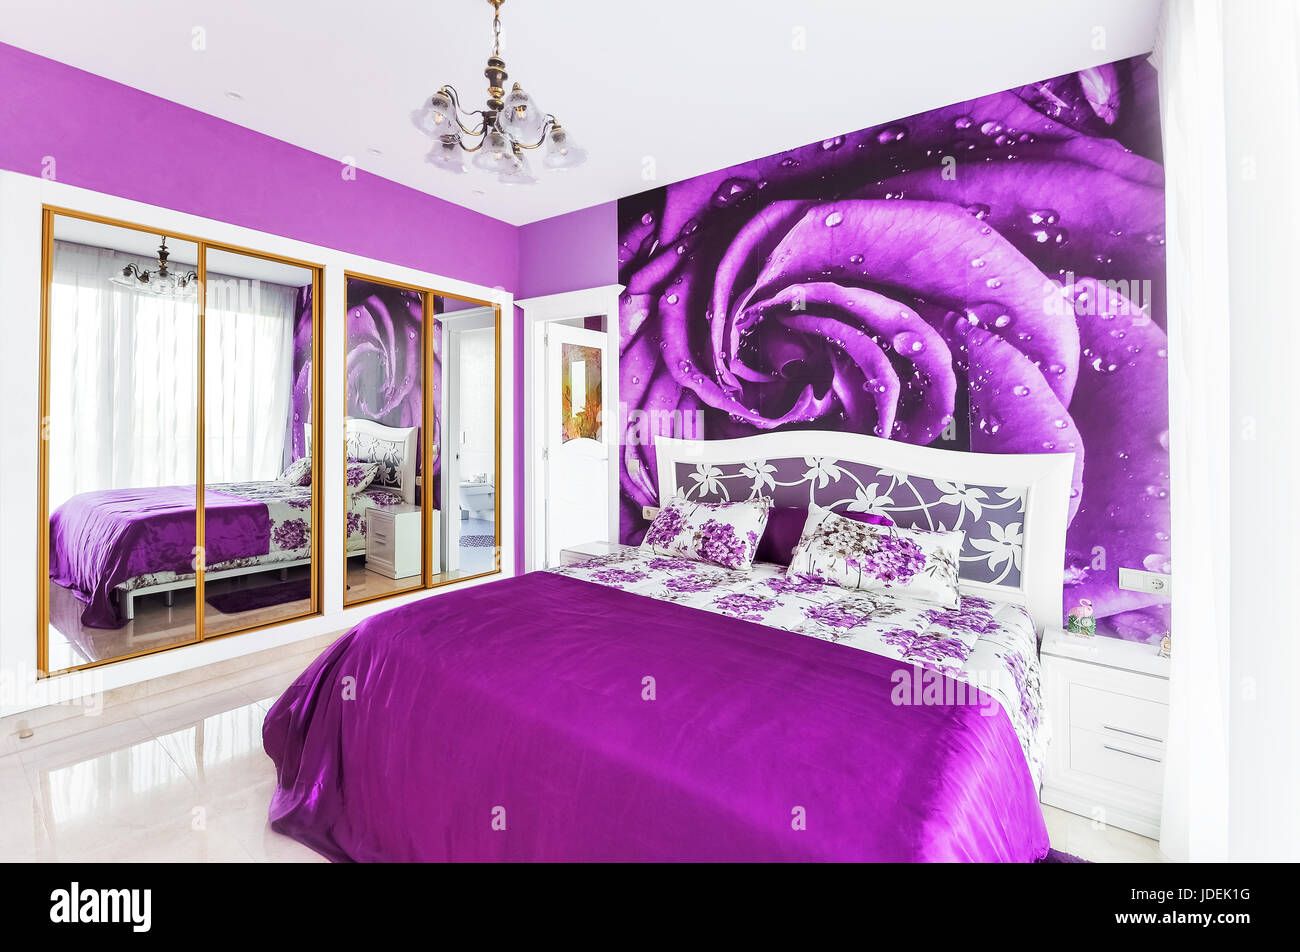 Interno della camera da letto accogliente in luminosi toni di viola. Grande armadio con specchi. Parete di carte su una parete. Foto Stock